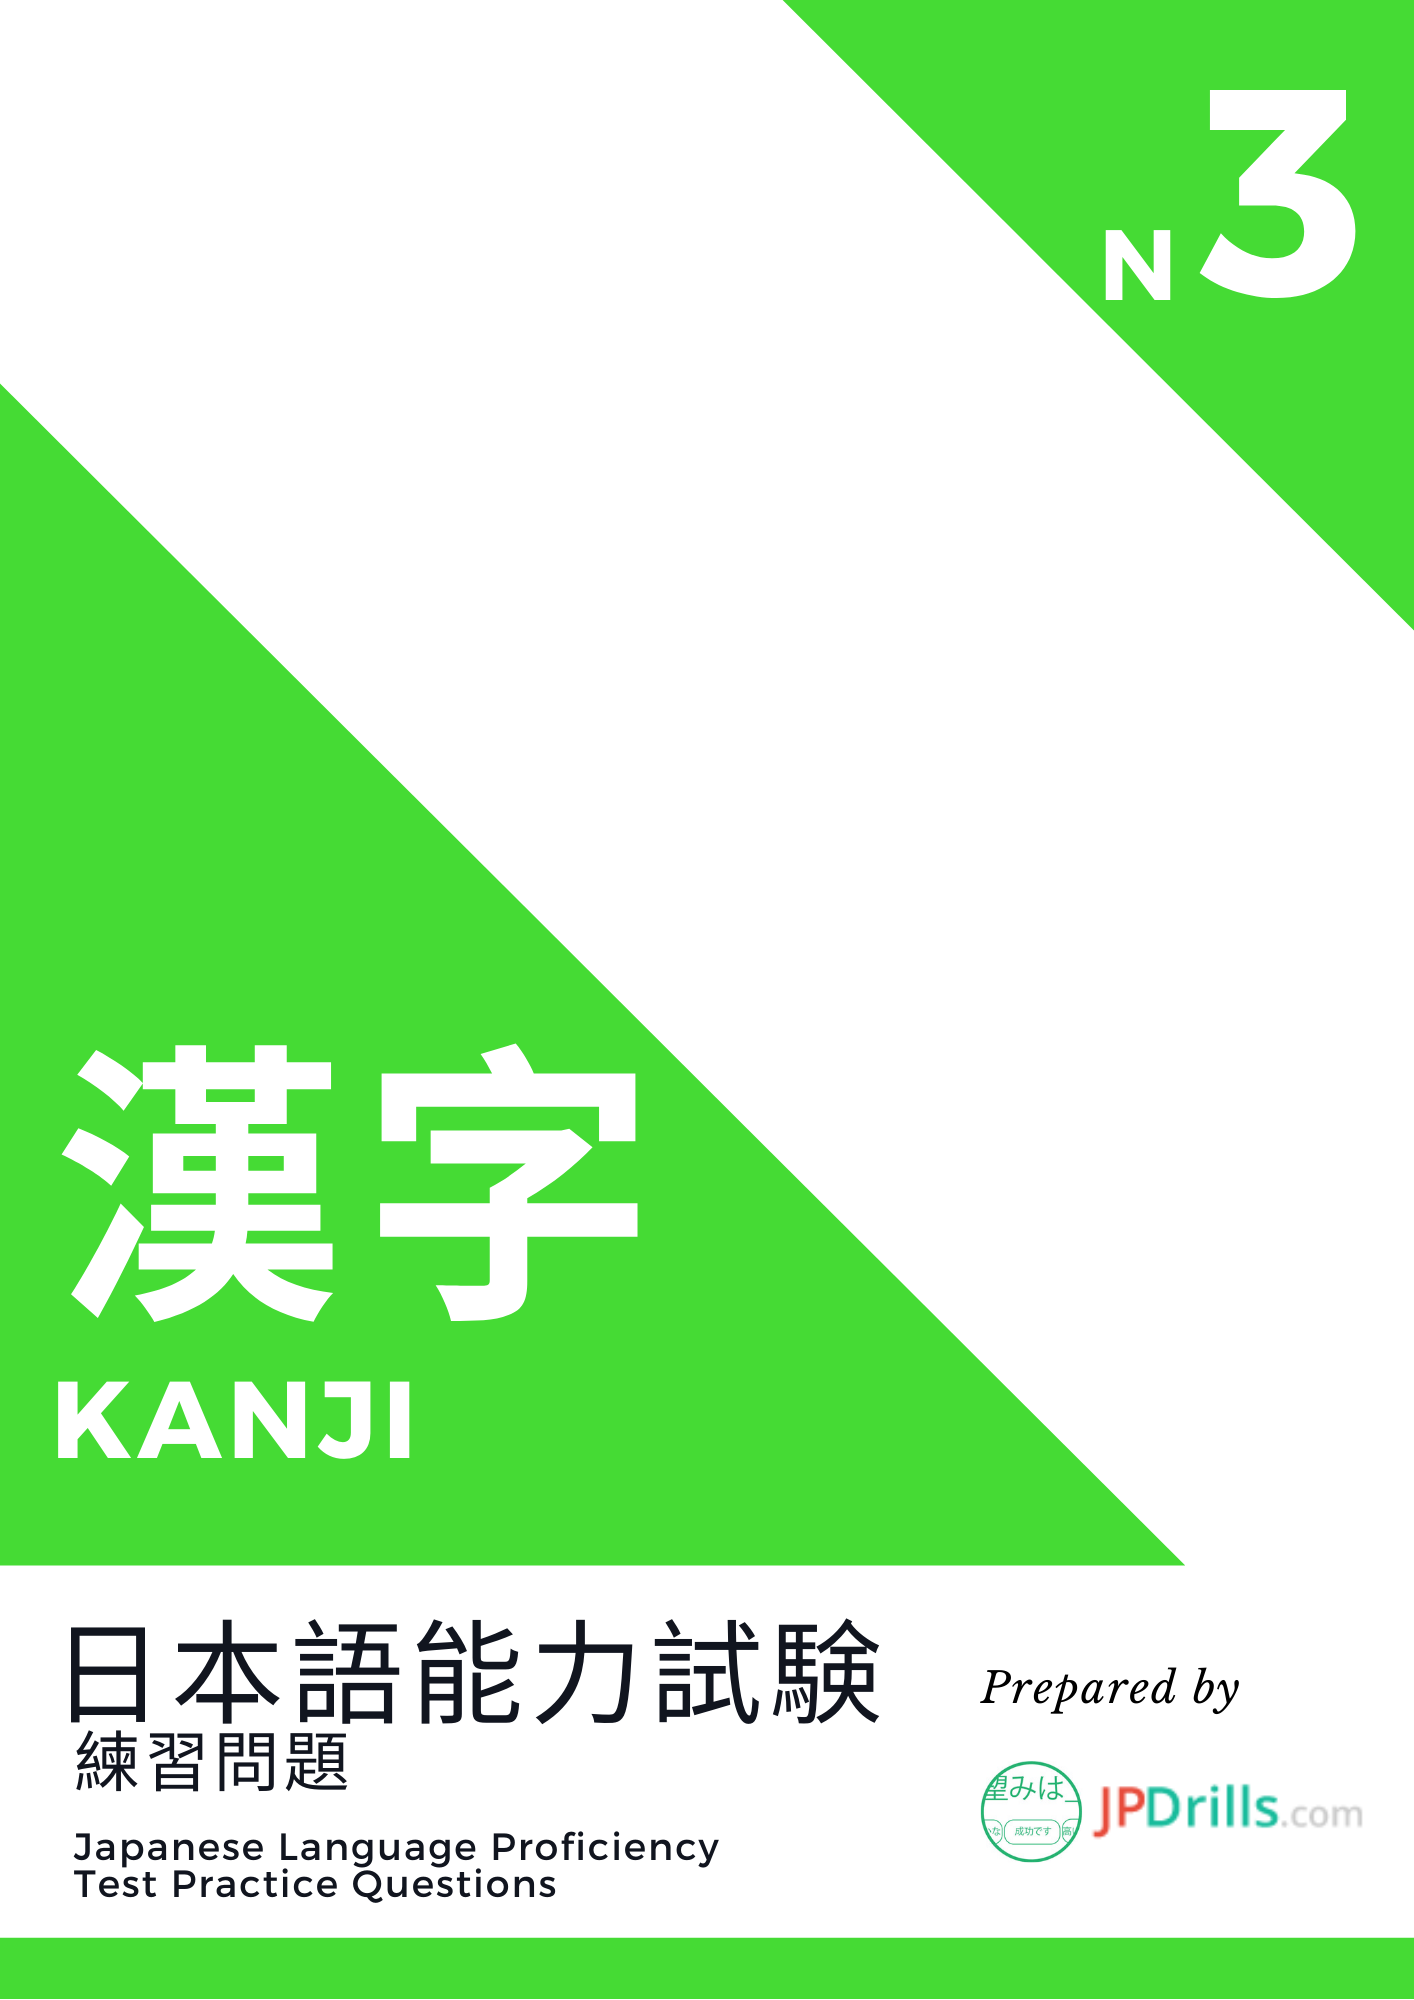 JLPT N3 Kanji quiz logo